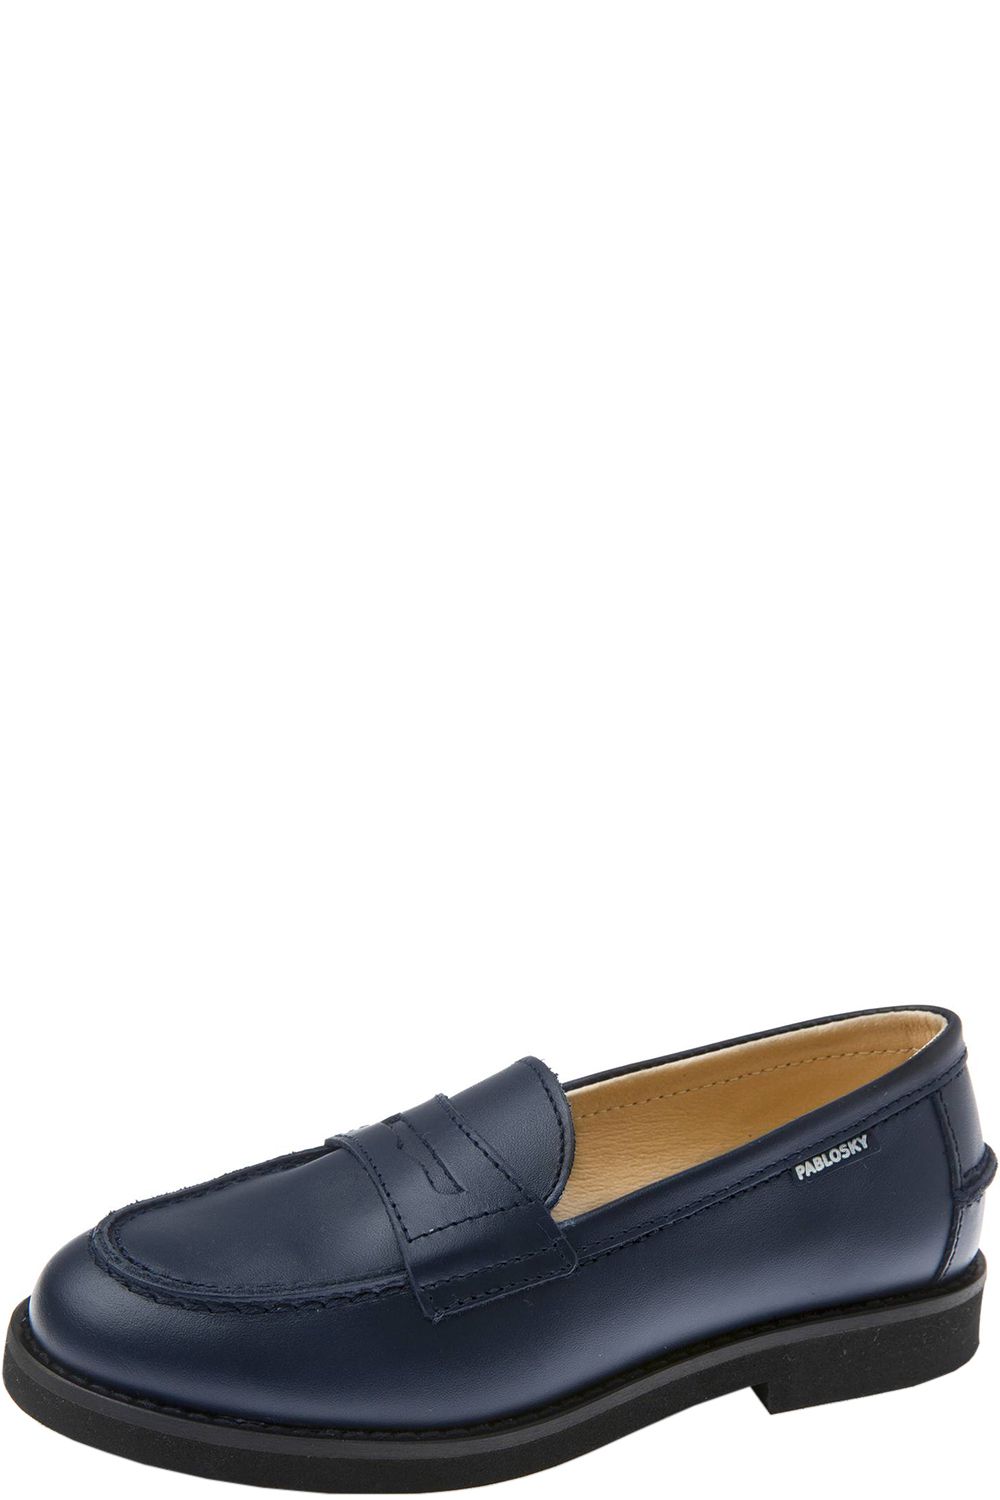 Туфли Pablosky, размер 31, цвет синий 717620 - фото 1